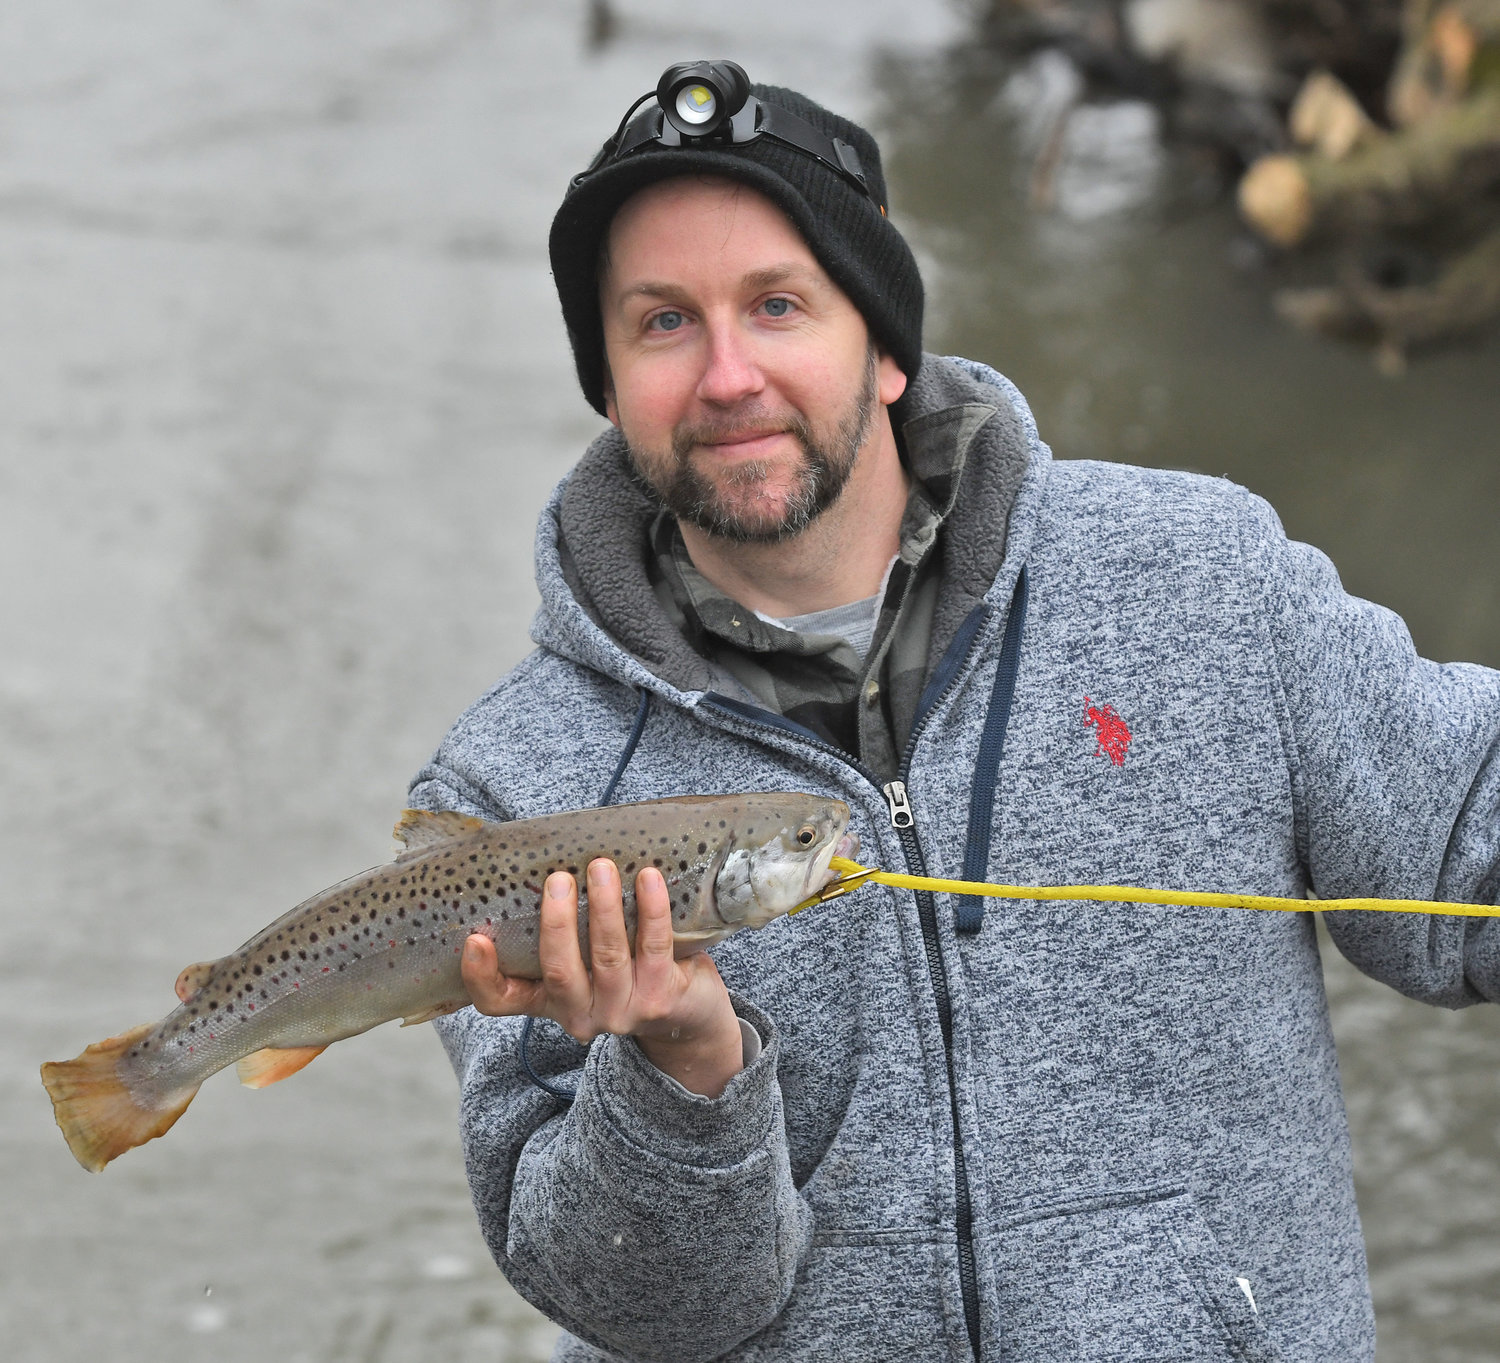 PESCA DEL DÍA: Casey Miner de Rome sostiene una trucha marrón de 18 pulgadas que atrapó en el río Mohawk el viernes junto al criadero de peces de Rome.  